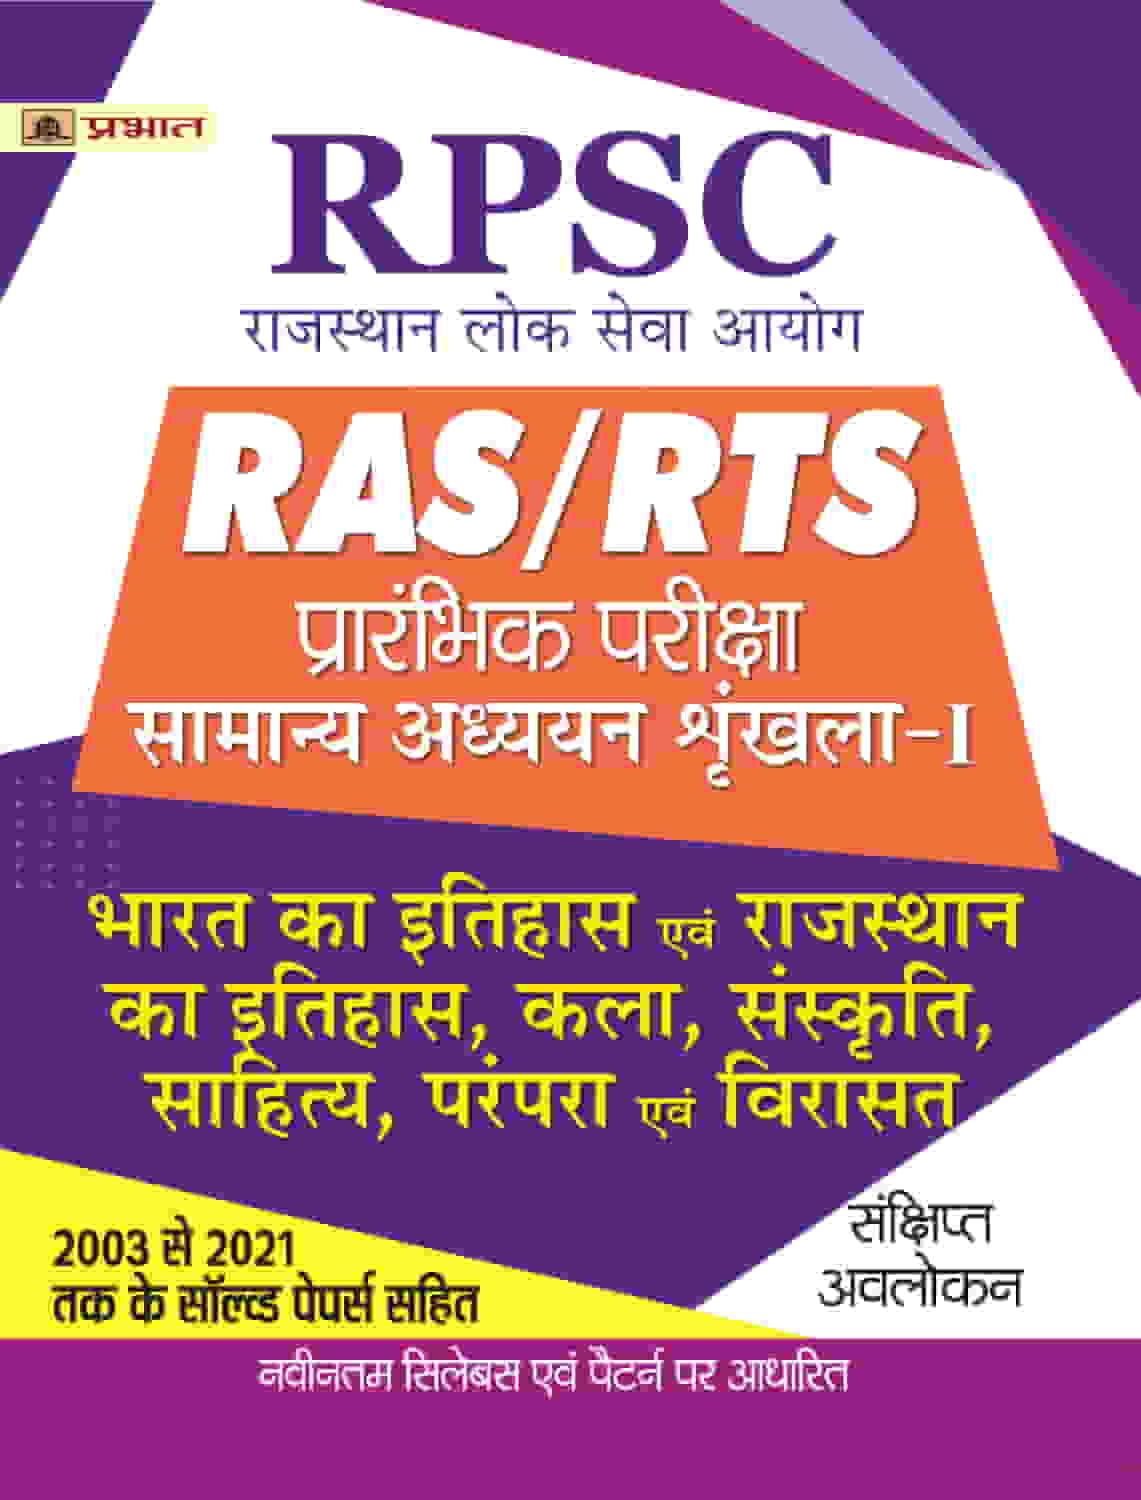 RPSC RAS/RTS Prarambhik Pariksha Bharat Ka Itihas Evam Rajasthan Ka Itihas, Kala, Sanskriti, Sahitya, Parampara Evam Virasat